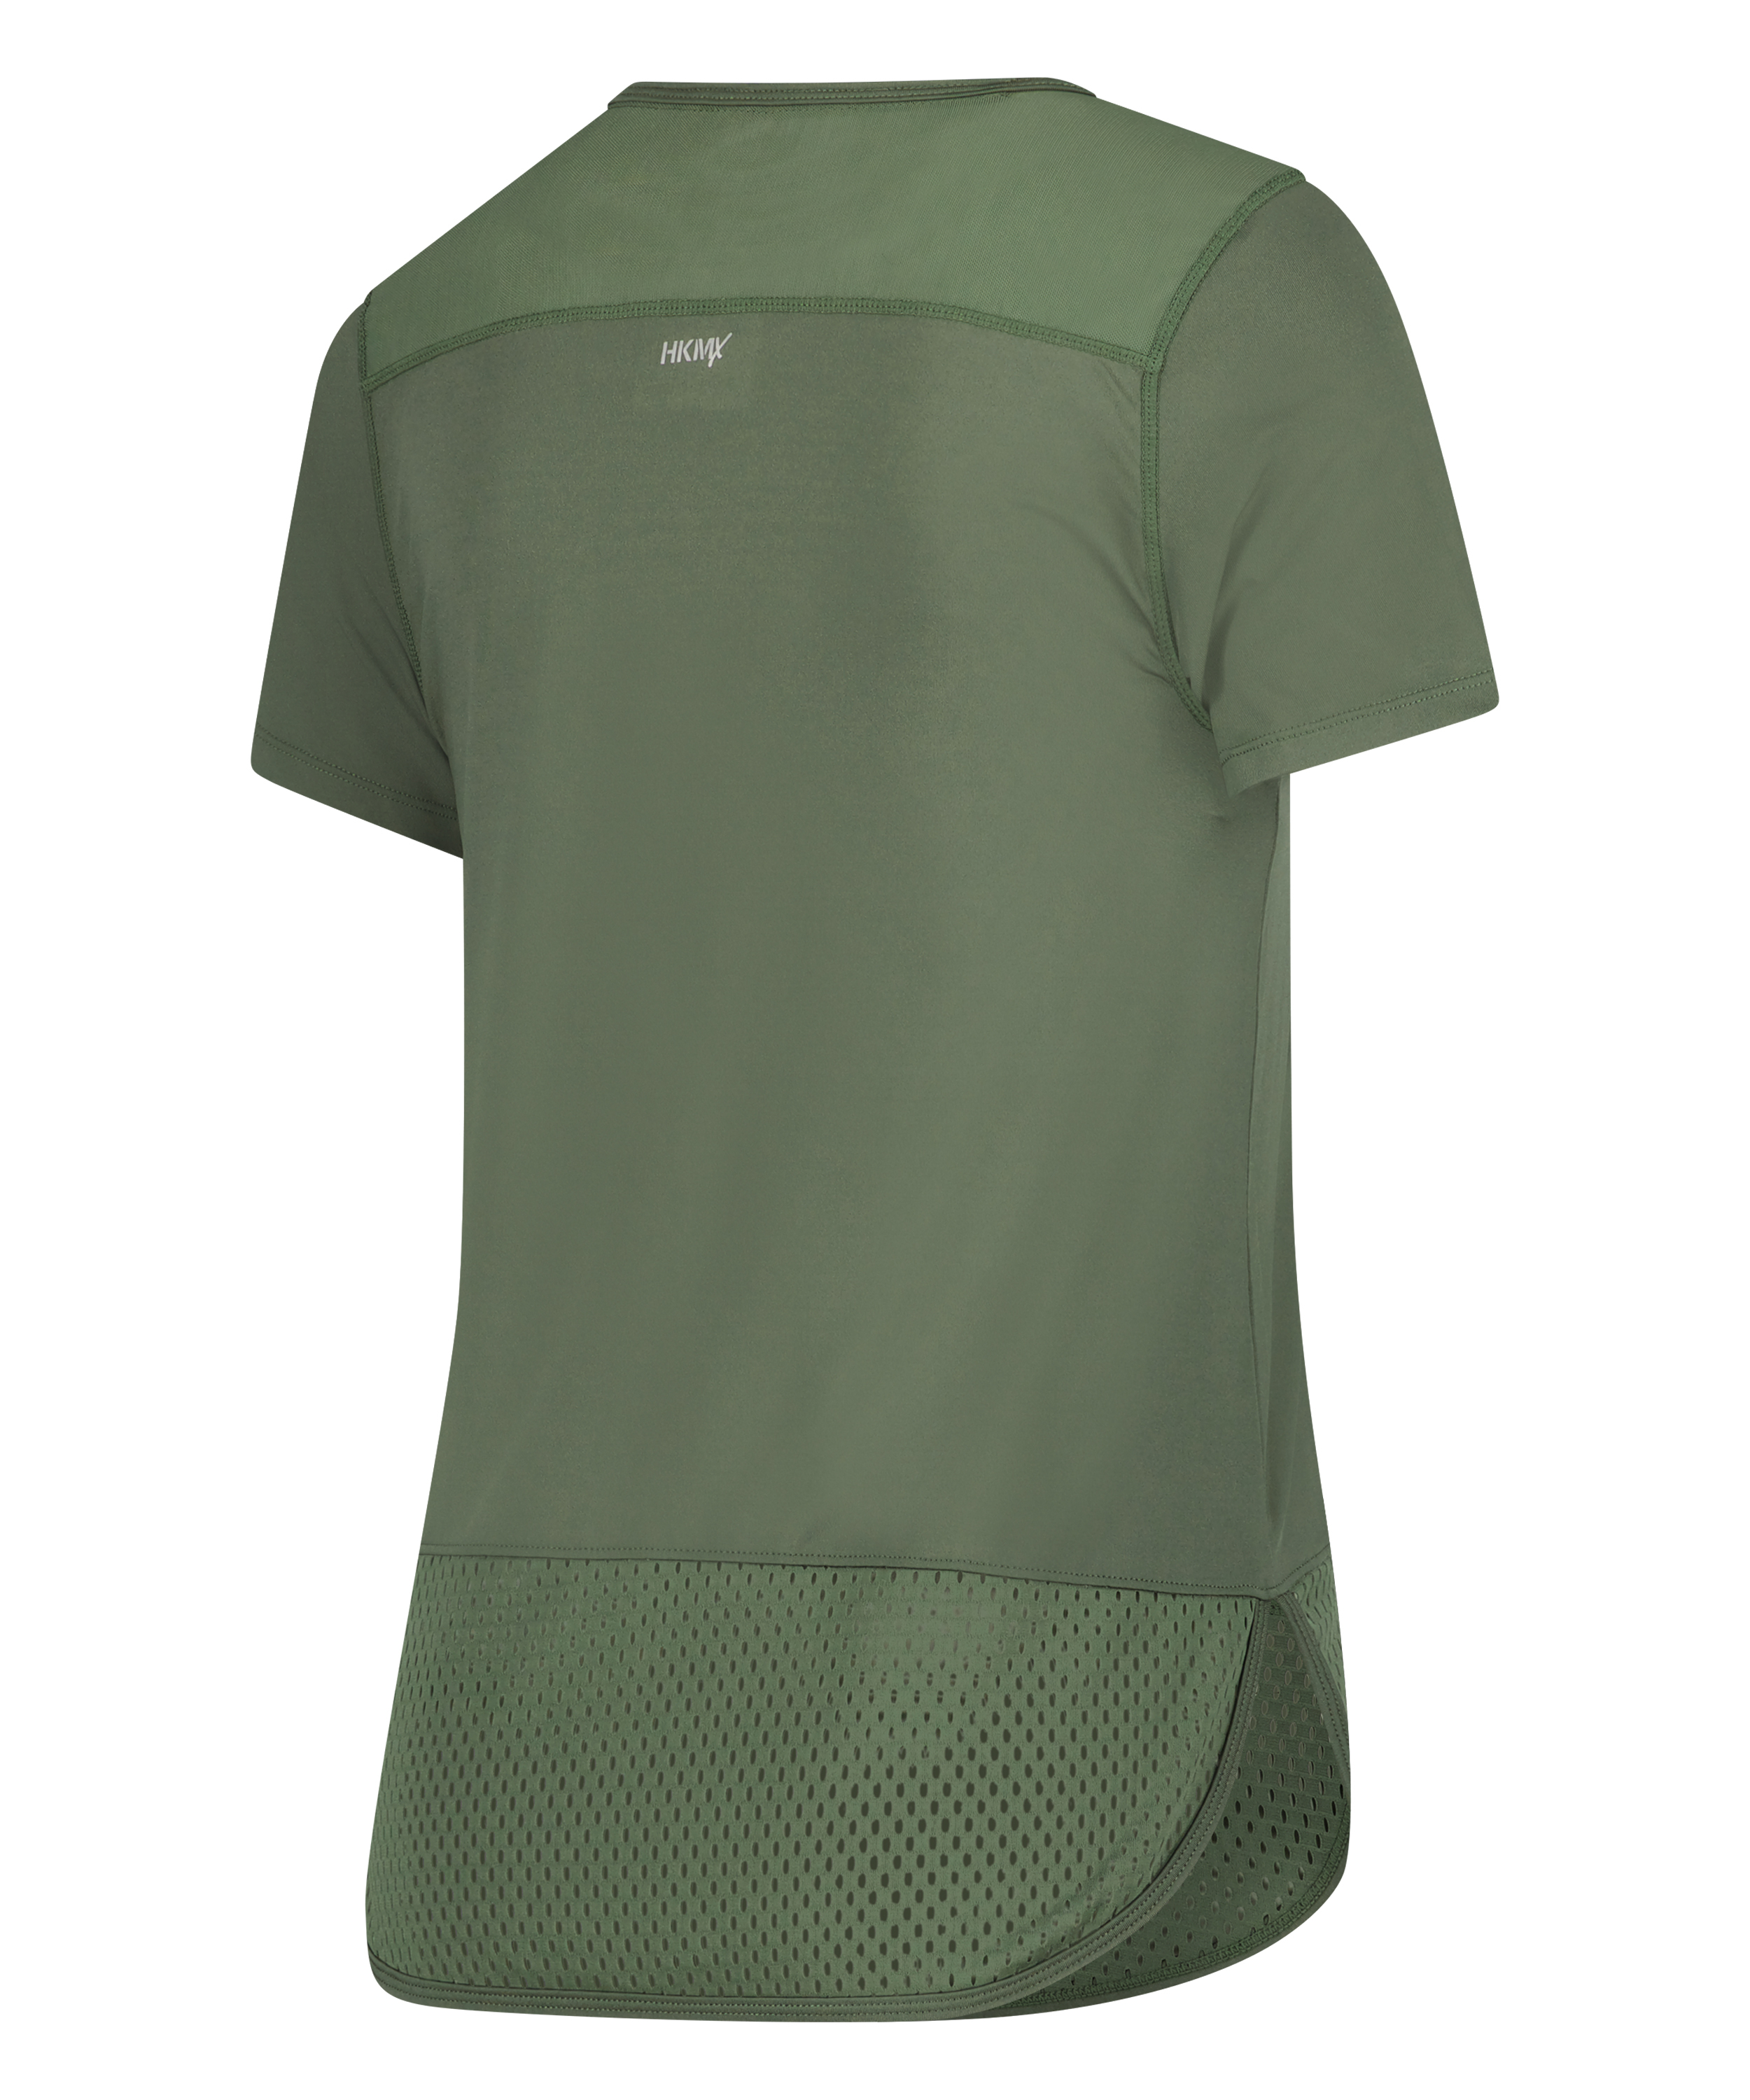 HKMX T-Shirt Performance, grün, main